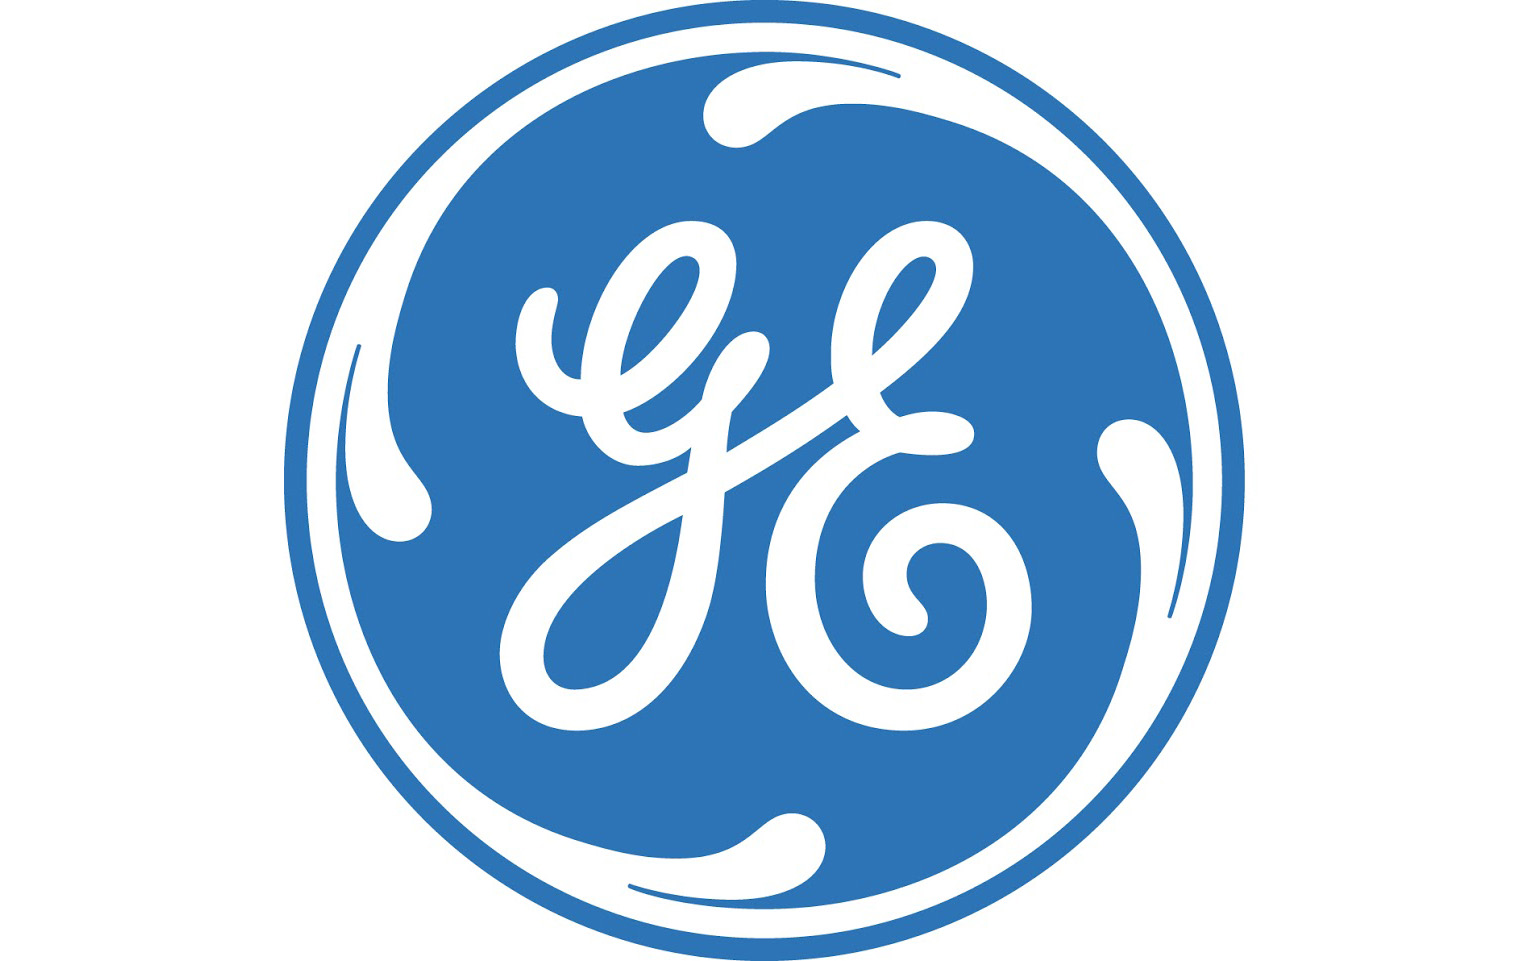 Логотип General Electric